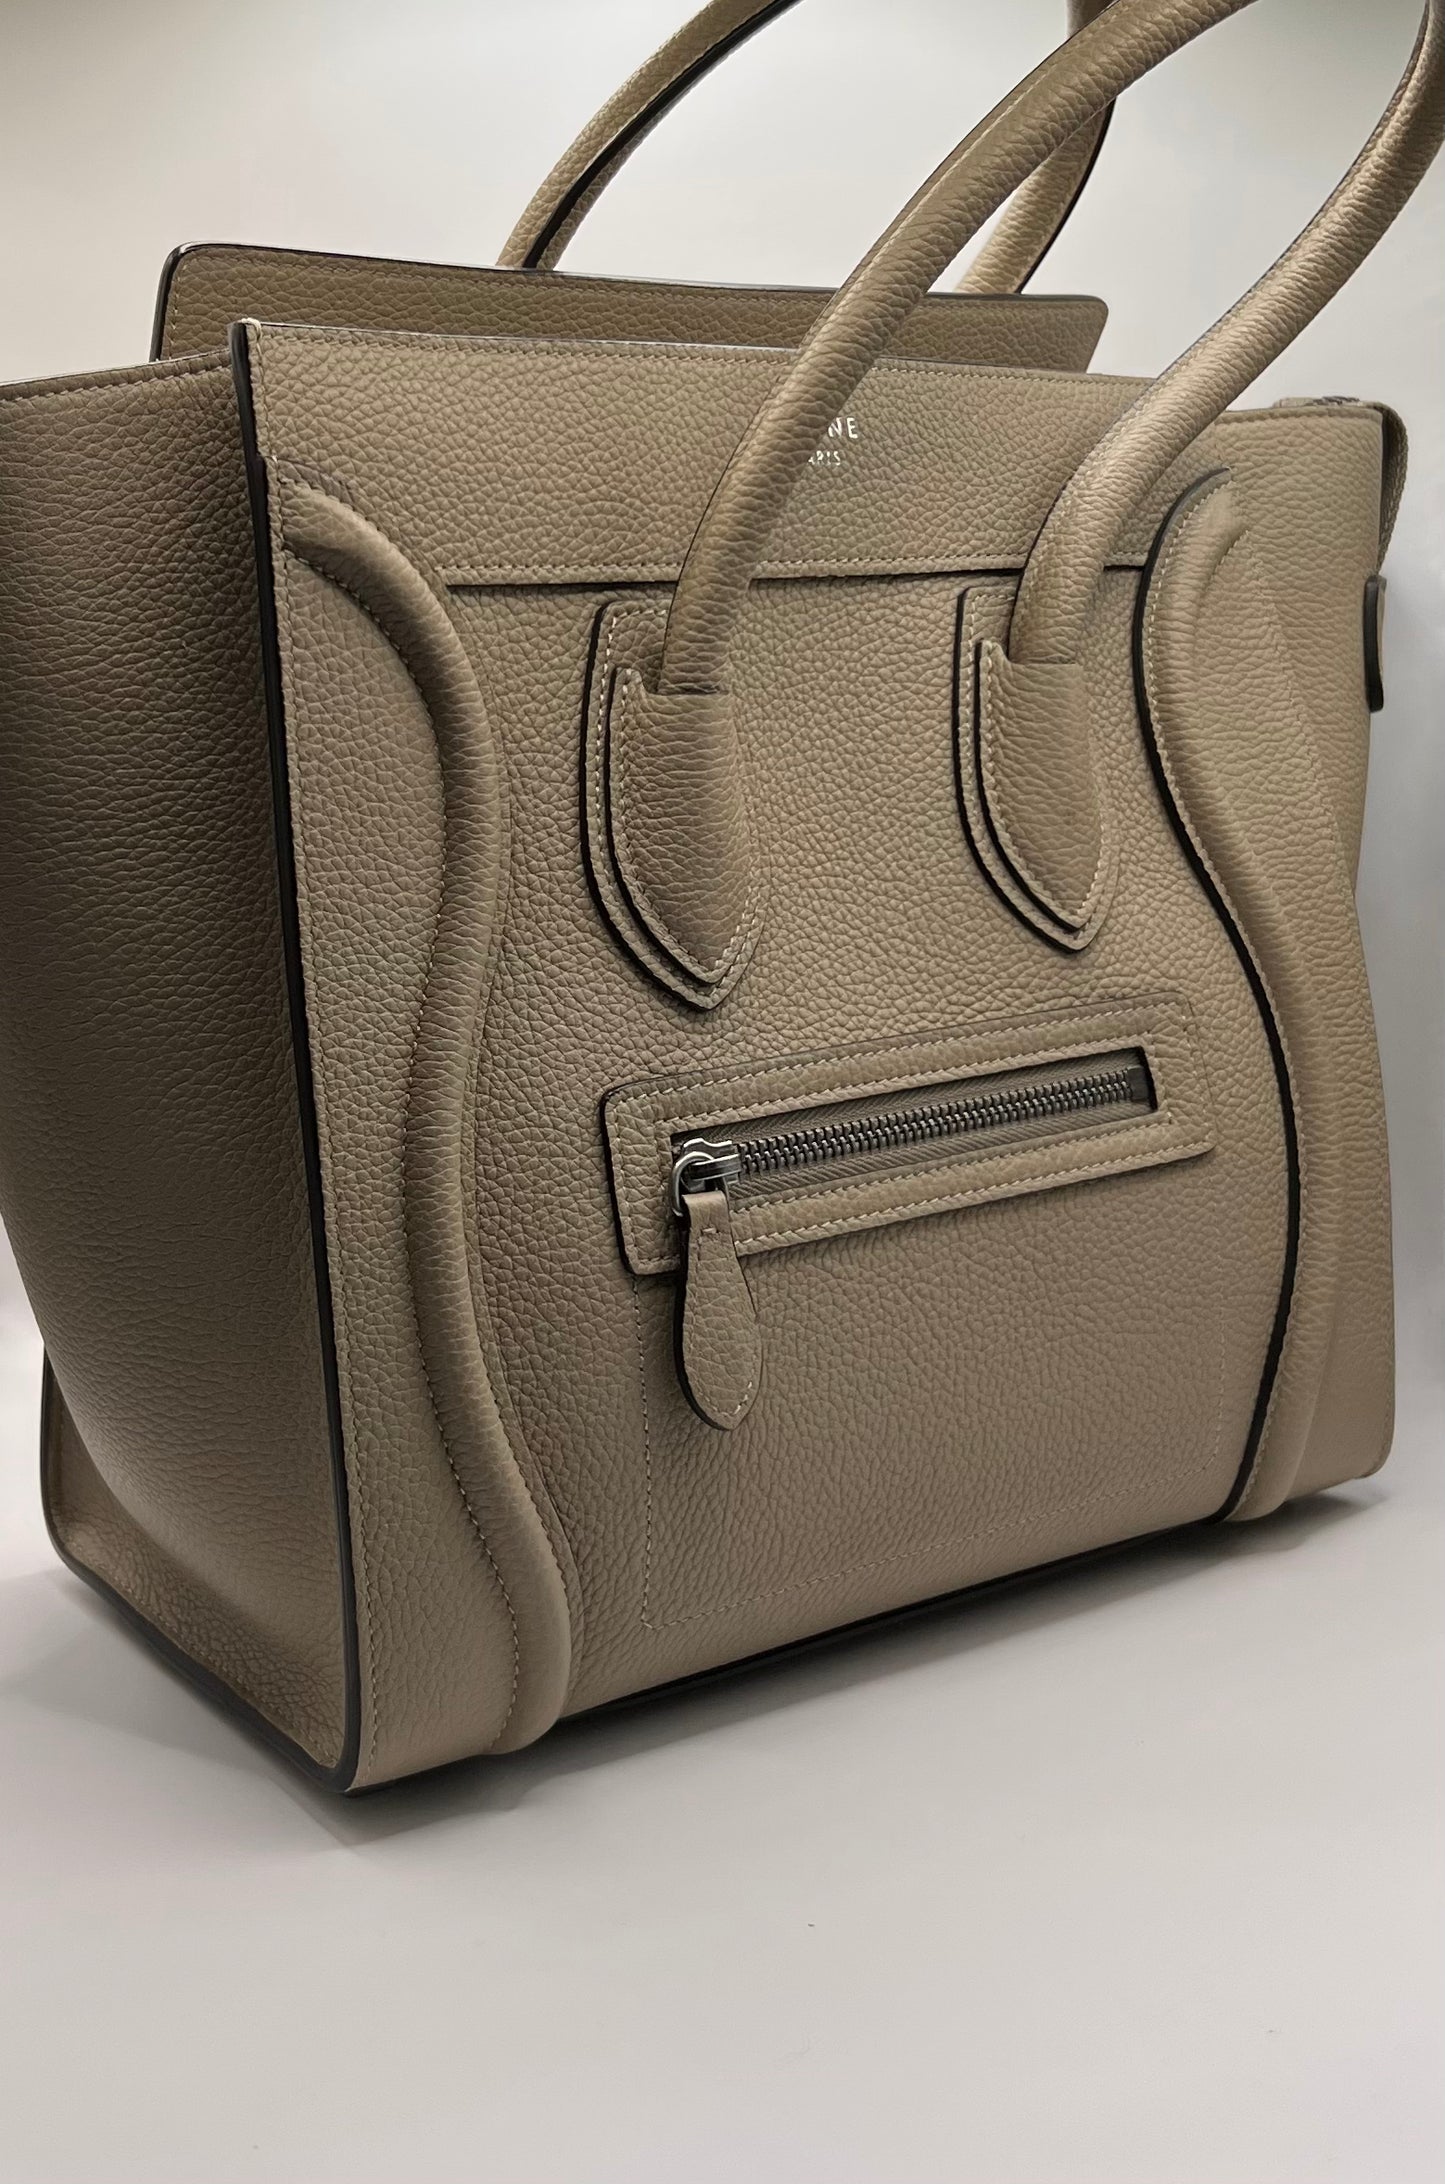 Celine luggage handbag